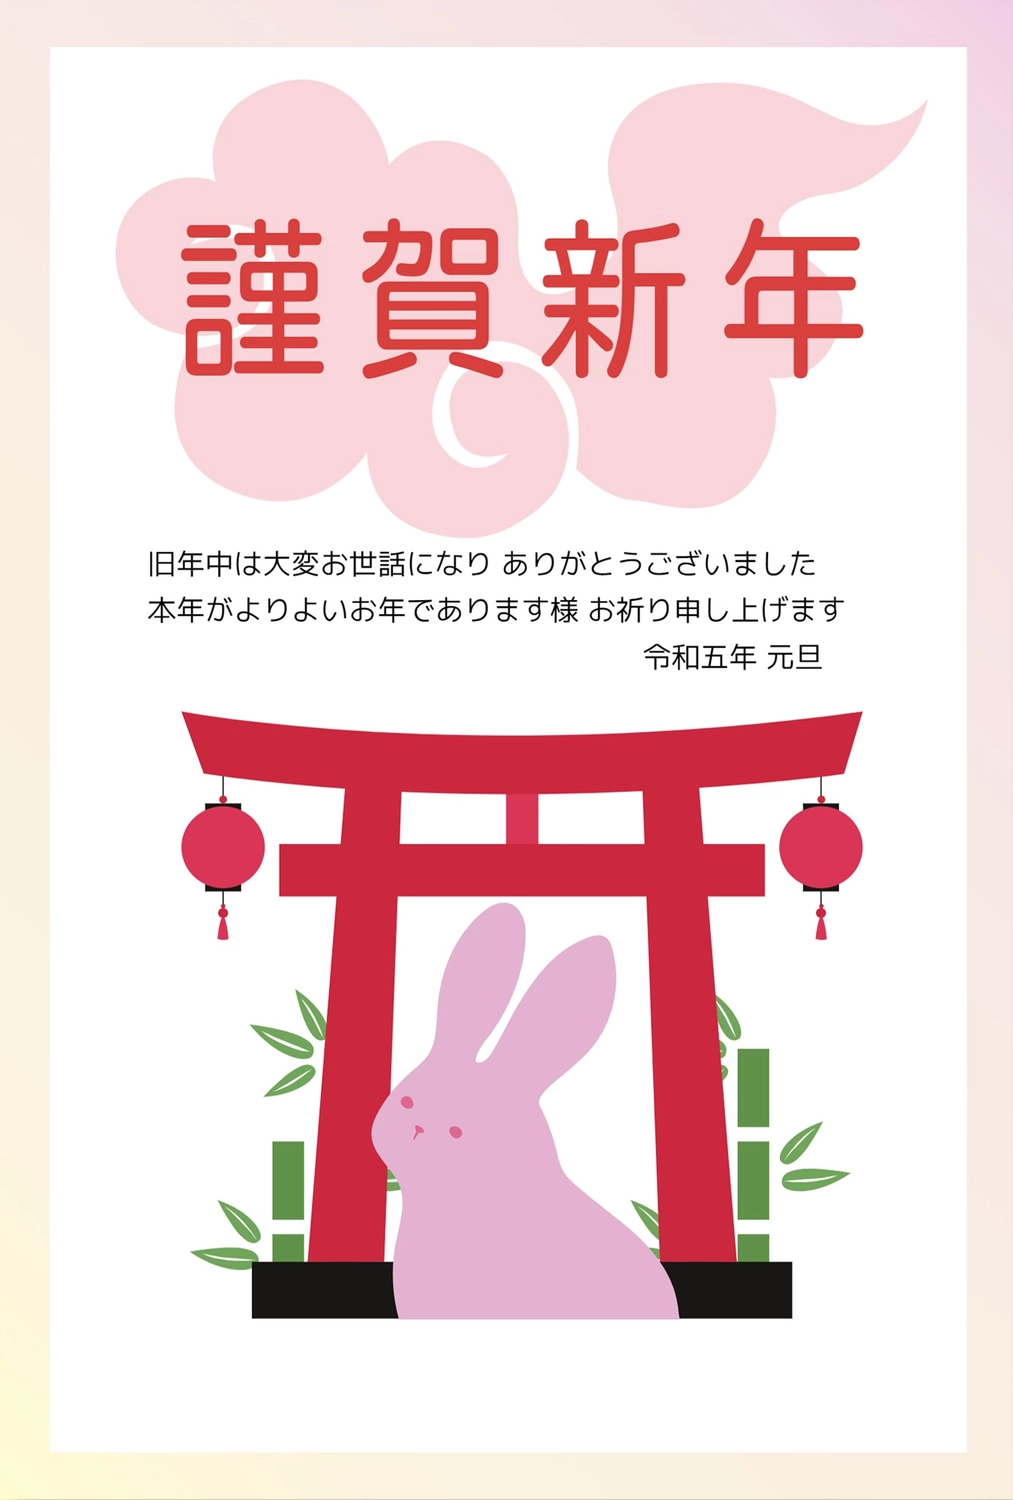 鳥居とうさぎの年賀状, NEW YEAR, concord, rabbit, New Year Card template